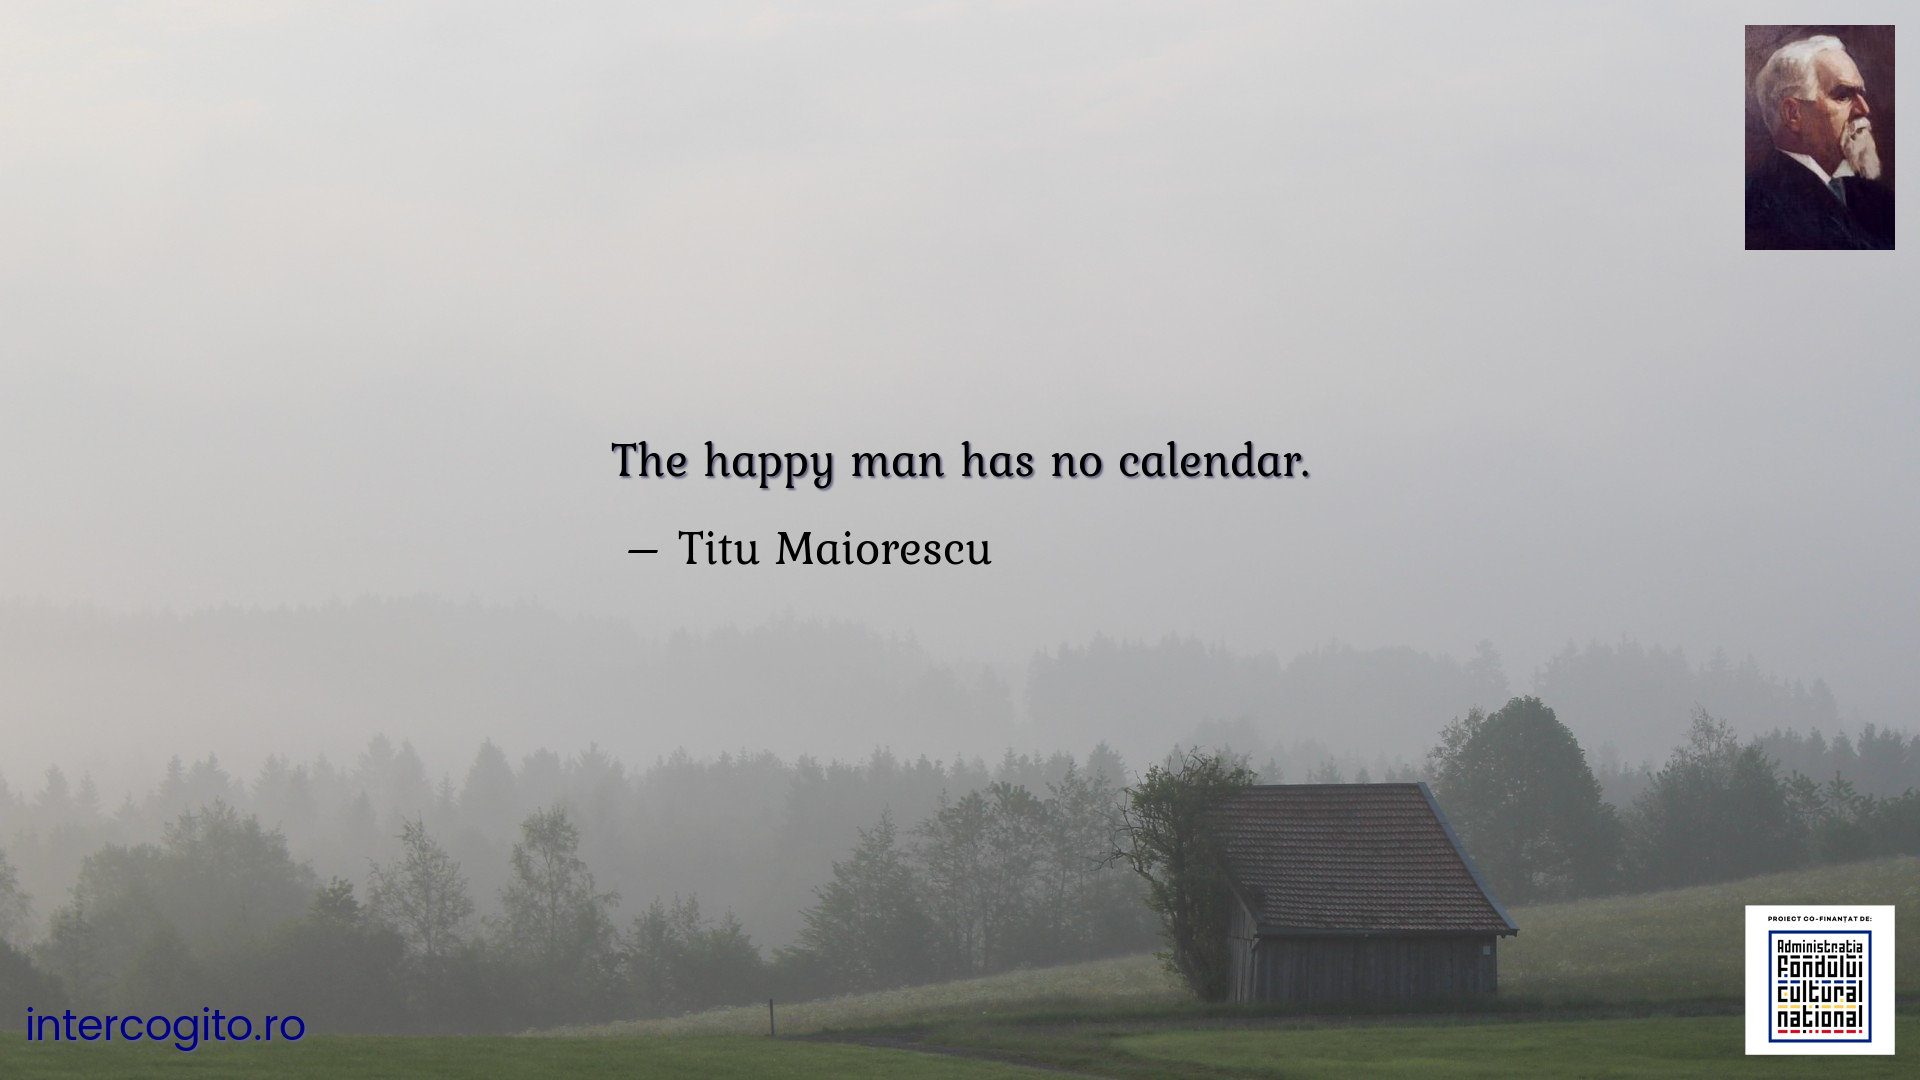 The happy man has no calendar.